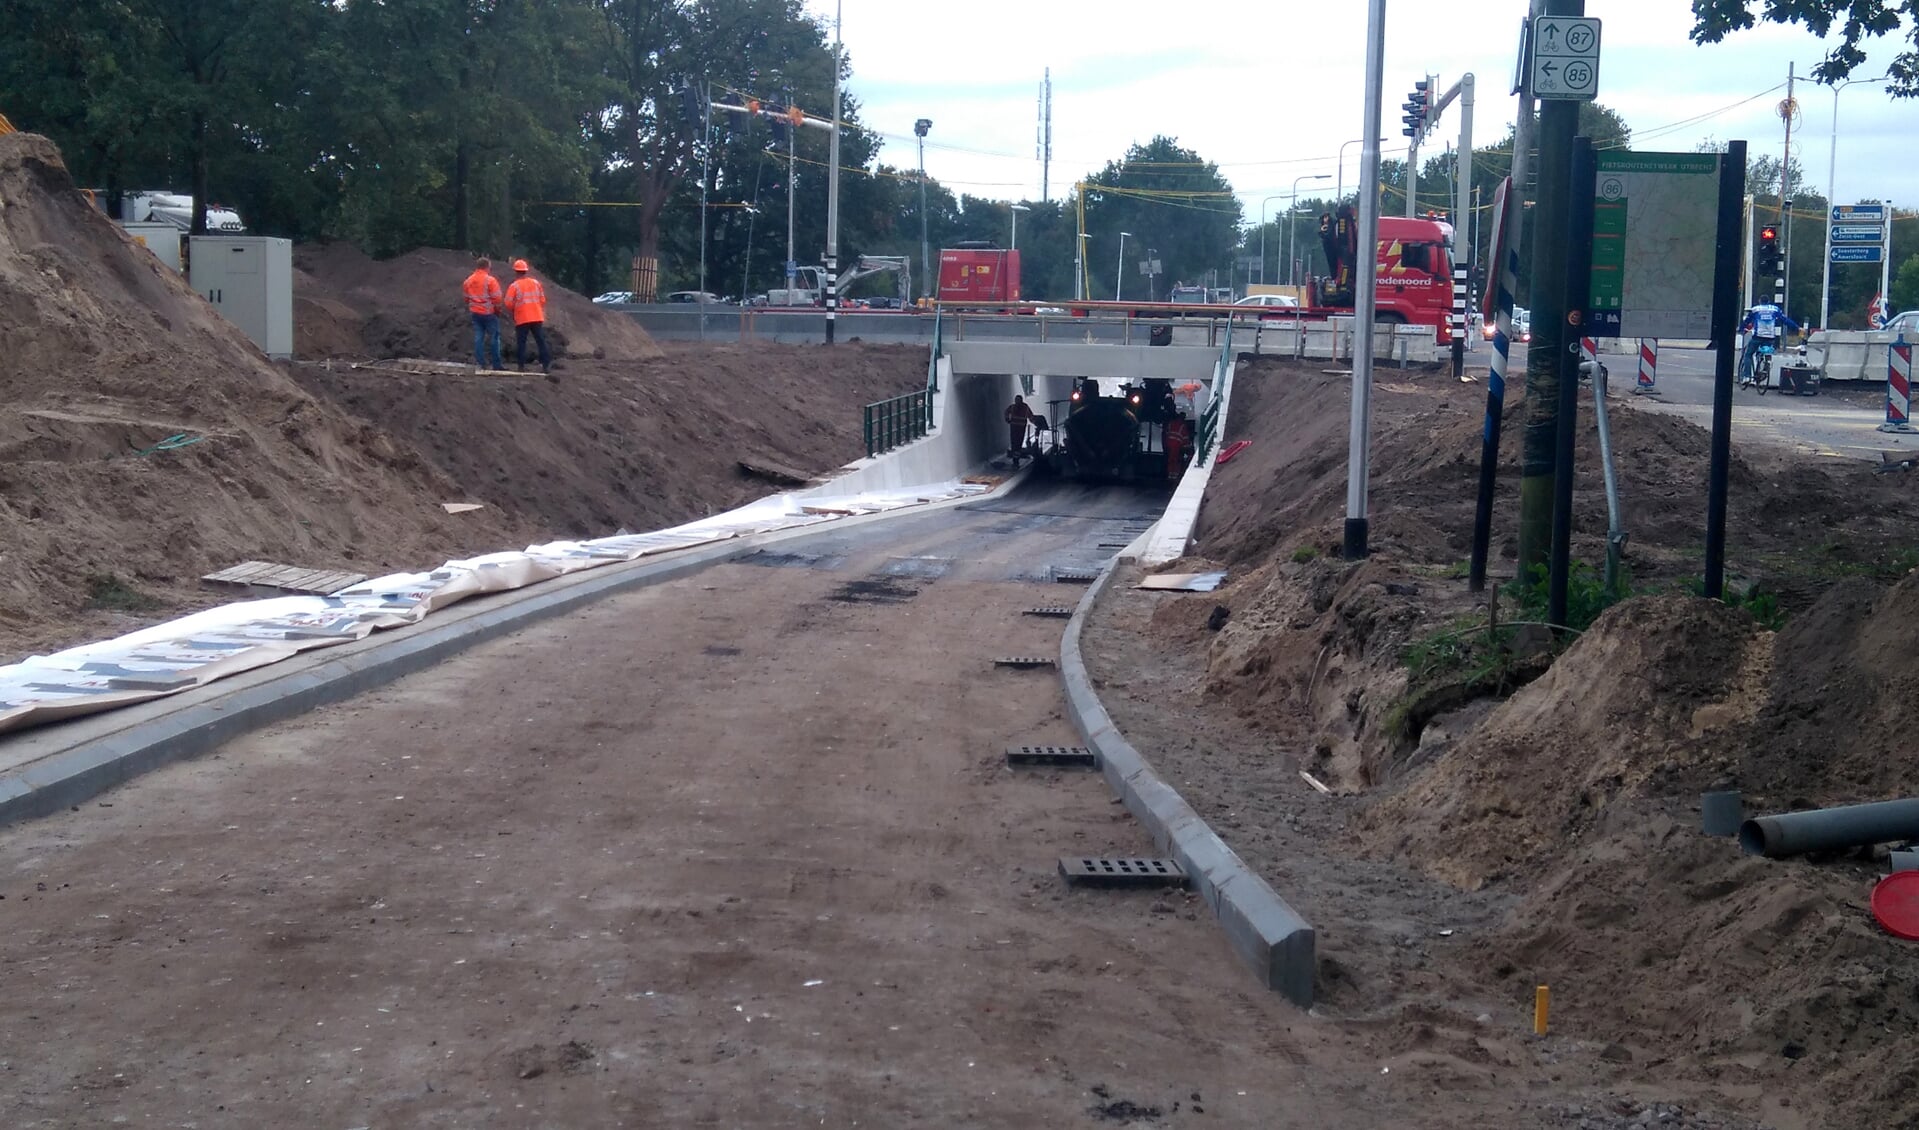 Maandagochtend 10 oktober werd de weg weer opengesteld en konden de fietsers gebruik maken van de nieuwe fietstunnel. Ook zijn de nieuwe verkeerslichten in bedrijf. [foto Reyn Schuurman]